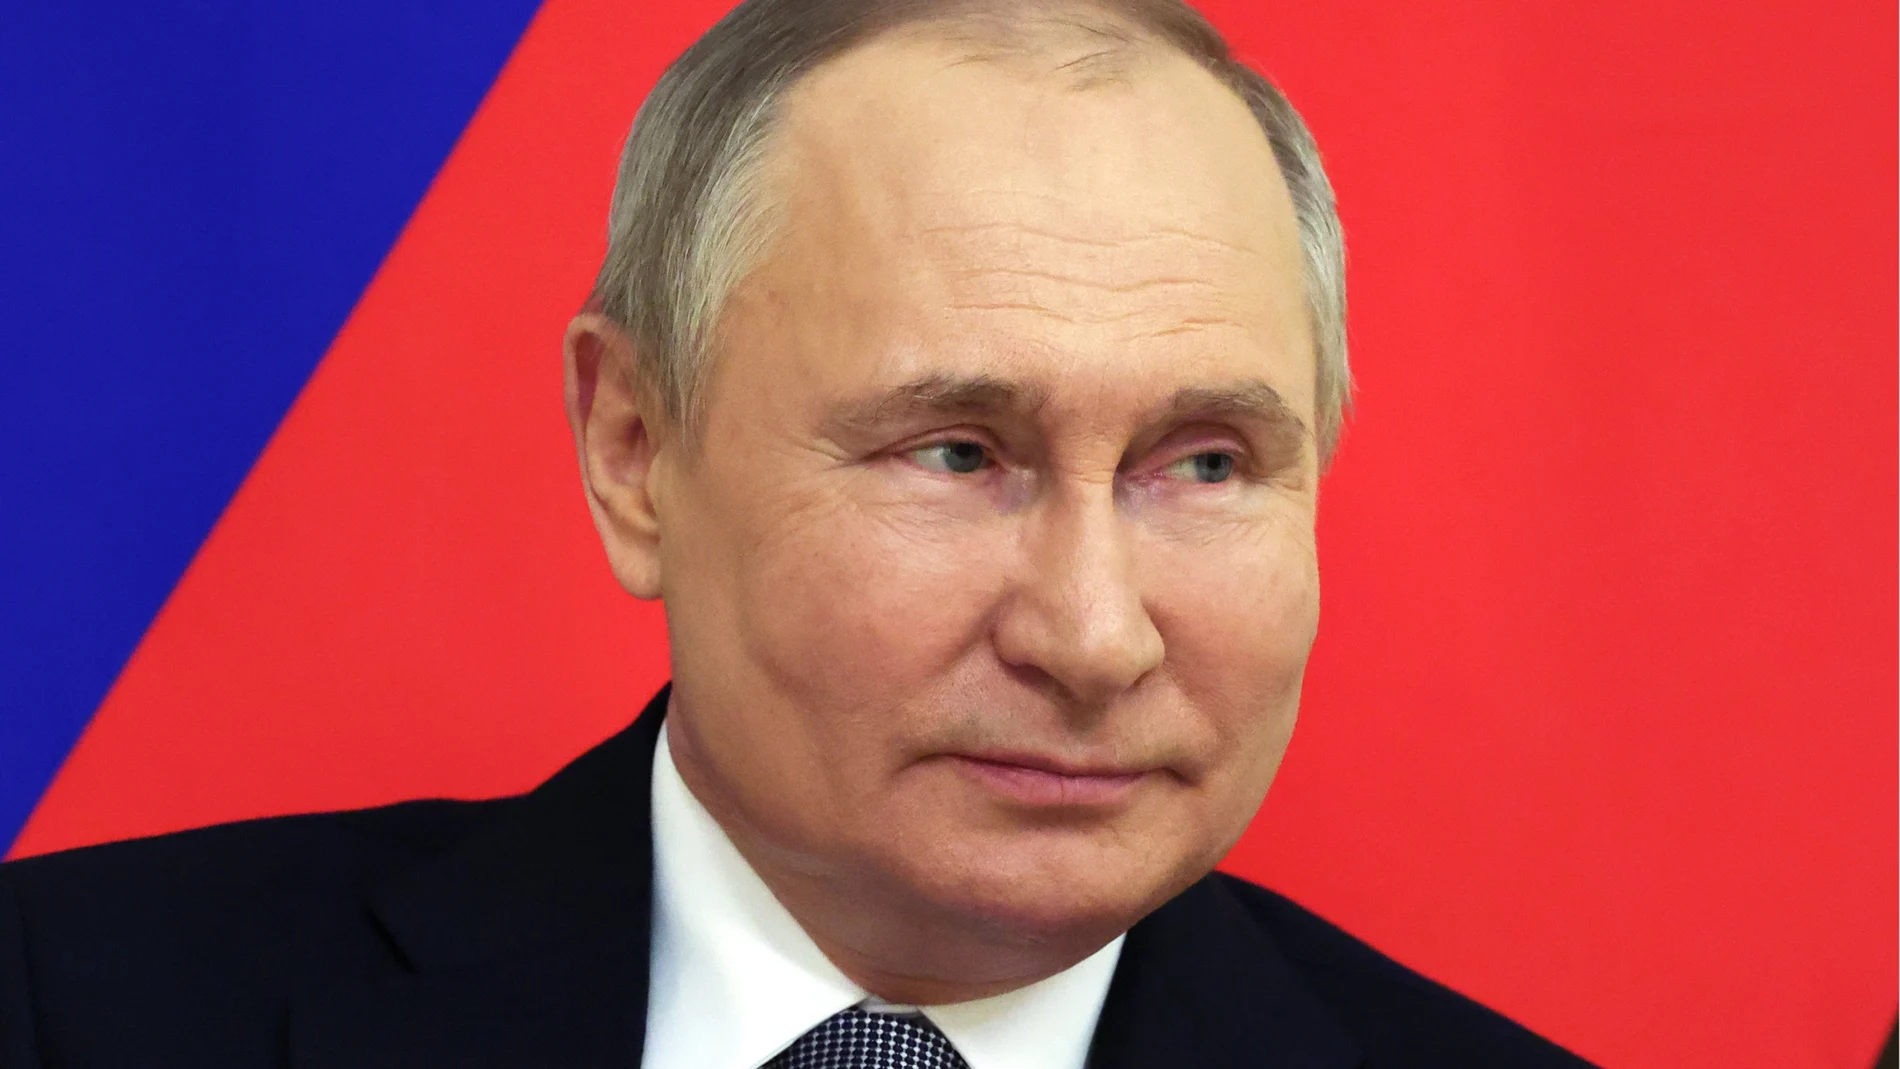 El jefe de la Oficina del Presidente cree que habiendo perdido la guerra con Ucrania, el presidente ruso se verá “obligado a inventar algún tipo de conspiración dentro de Rusia"